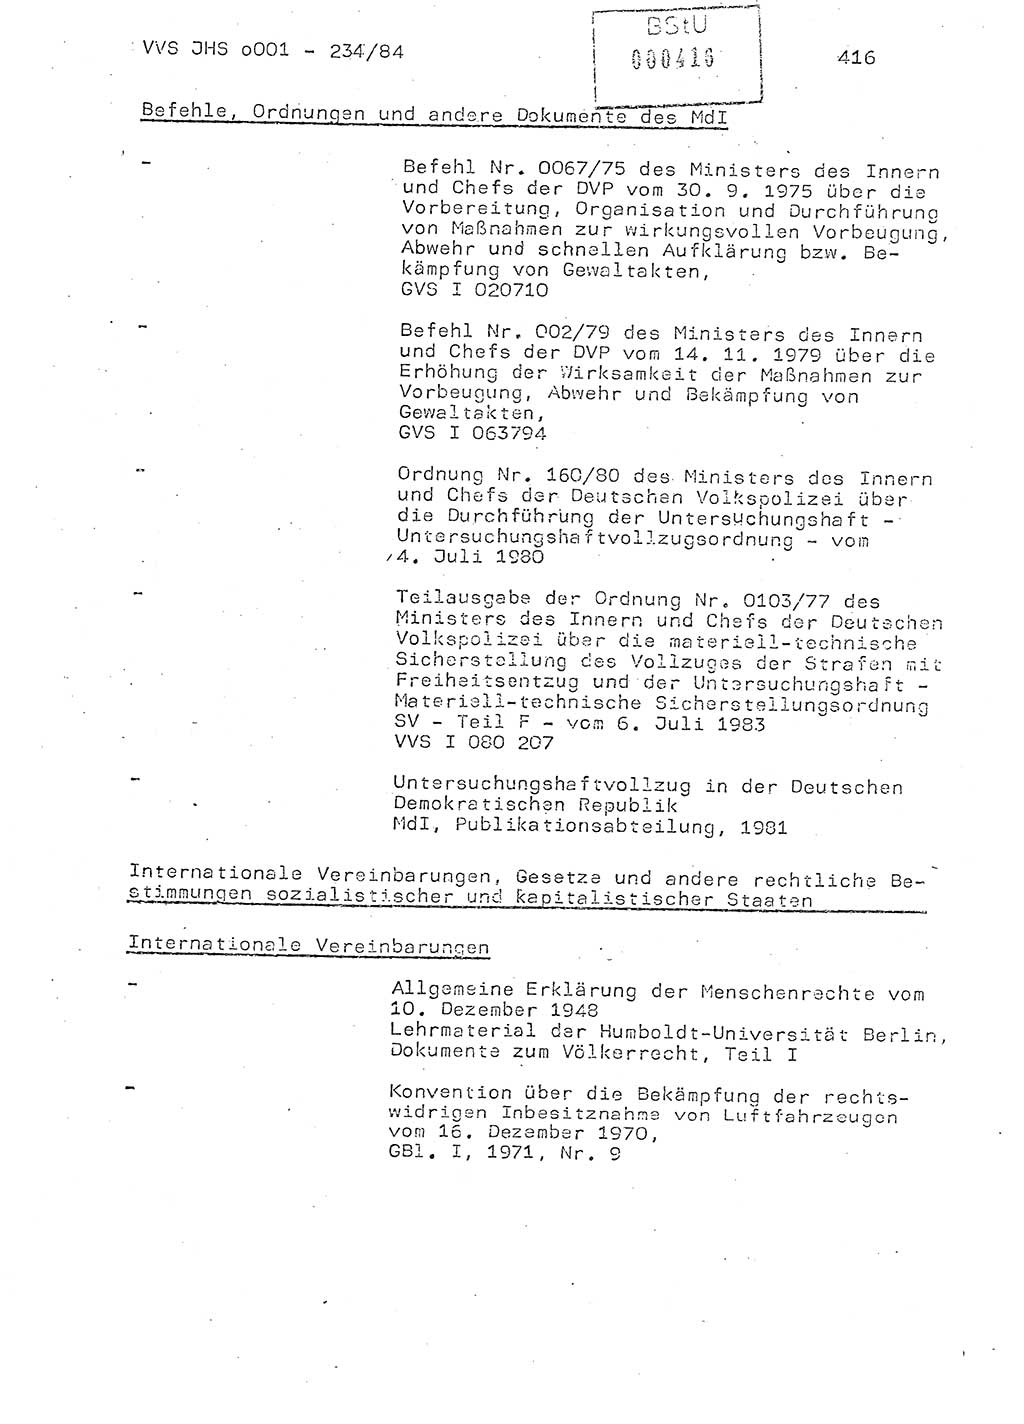 Dissertation Oberst Siegfried Rataizick (Abt. ⅩⅣ), Oberstleutnant Volkmar Heinz (Abt. ⅩⅣ), Oberstleutnant Werner Stein (HA Ⅸ), Hauptmann Heinz Conrad (JHS), Ministerium für Staatssicherheit (MfS) [Deutsche Demokratische Republik (DDR)], Juristische Hochschule (JHS), Vertrauliche Verschlußsache (VVS) o001-234/84, Potsdam 1984, Seite 416 (Diss. MfS DDR JHS VVS o001-234/84 1984, S. 416)